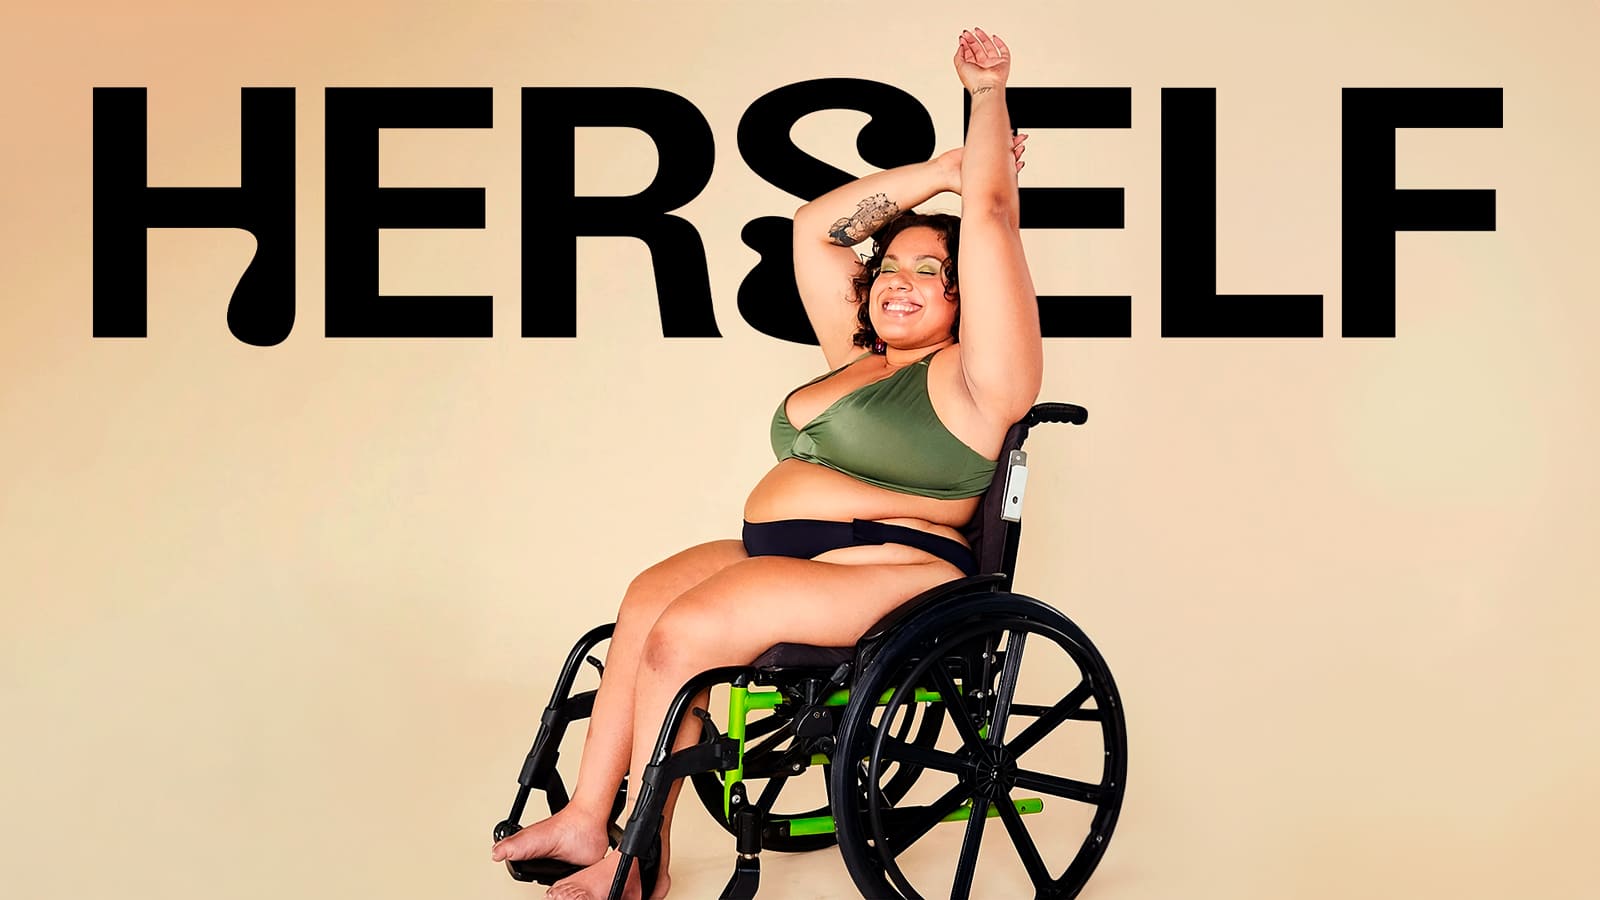 Foto com o nome Herself retrata uma pessoa branca em cadeira de rodas. Ela está sorrindo e com os olhos fechados. Com seu braço direito dobrado acima da cabeça, ela segura o braço esquerdo esticado para o alto. Usa a calcinha absorvente adaptada e top da marca.